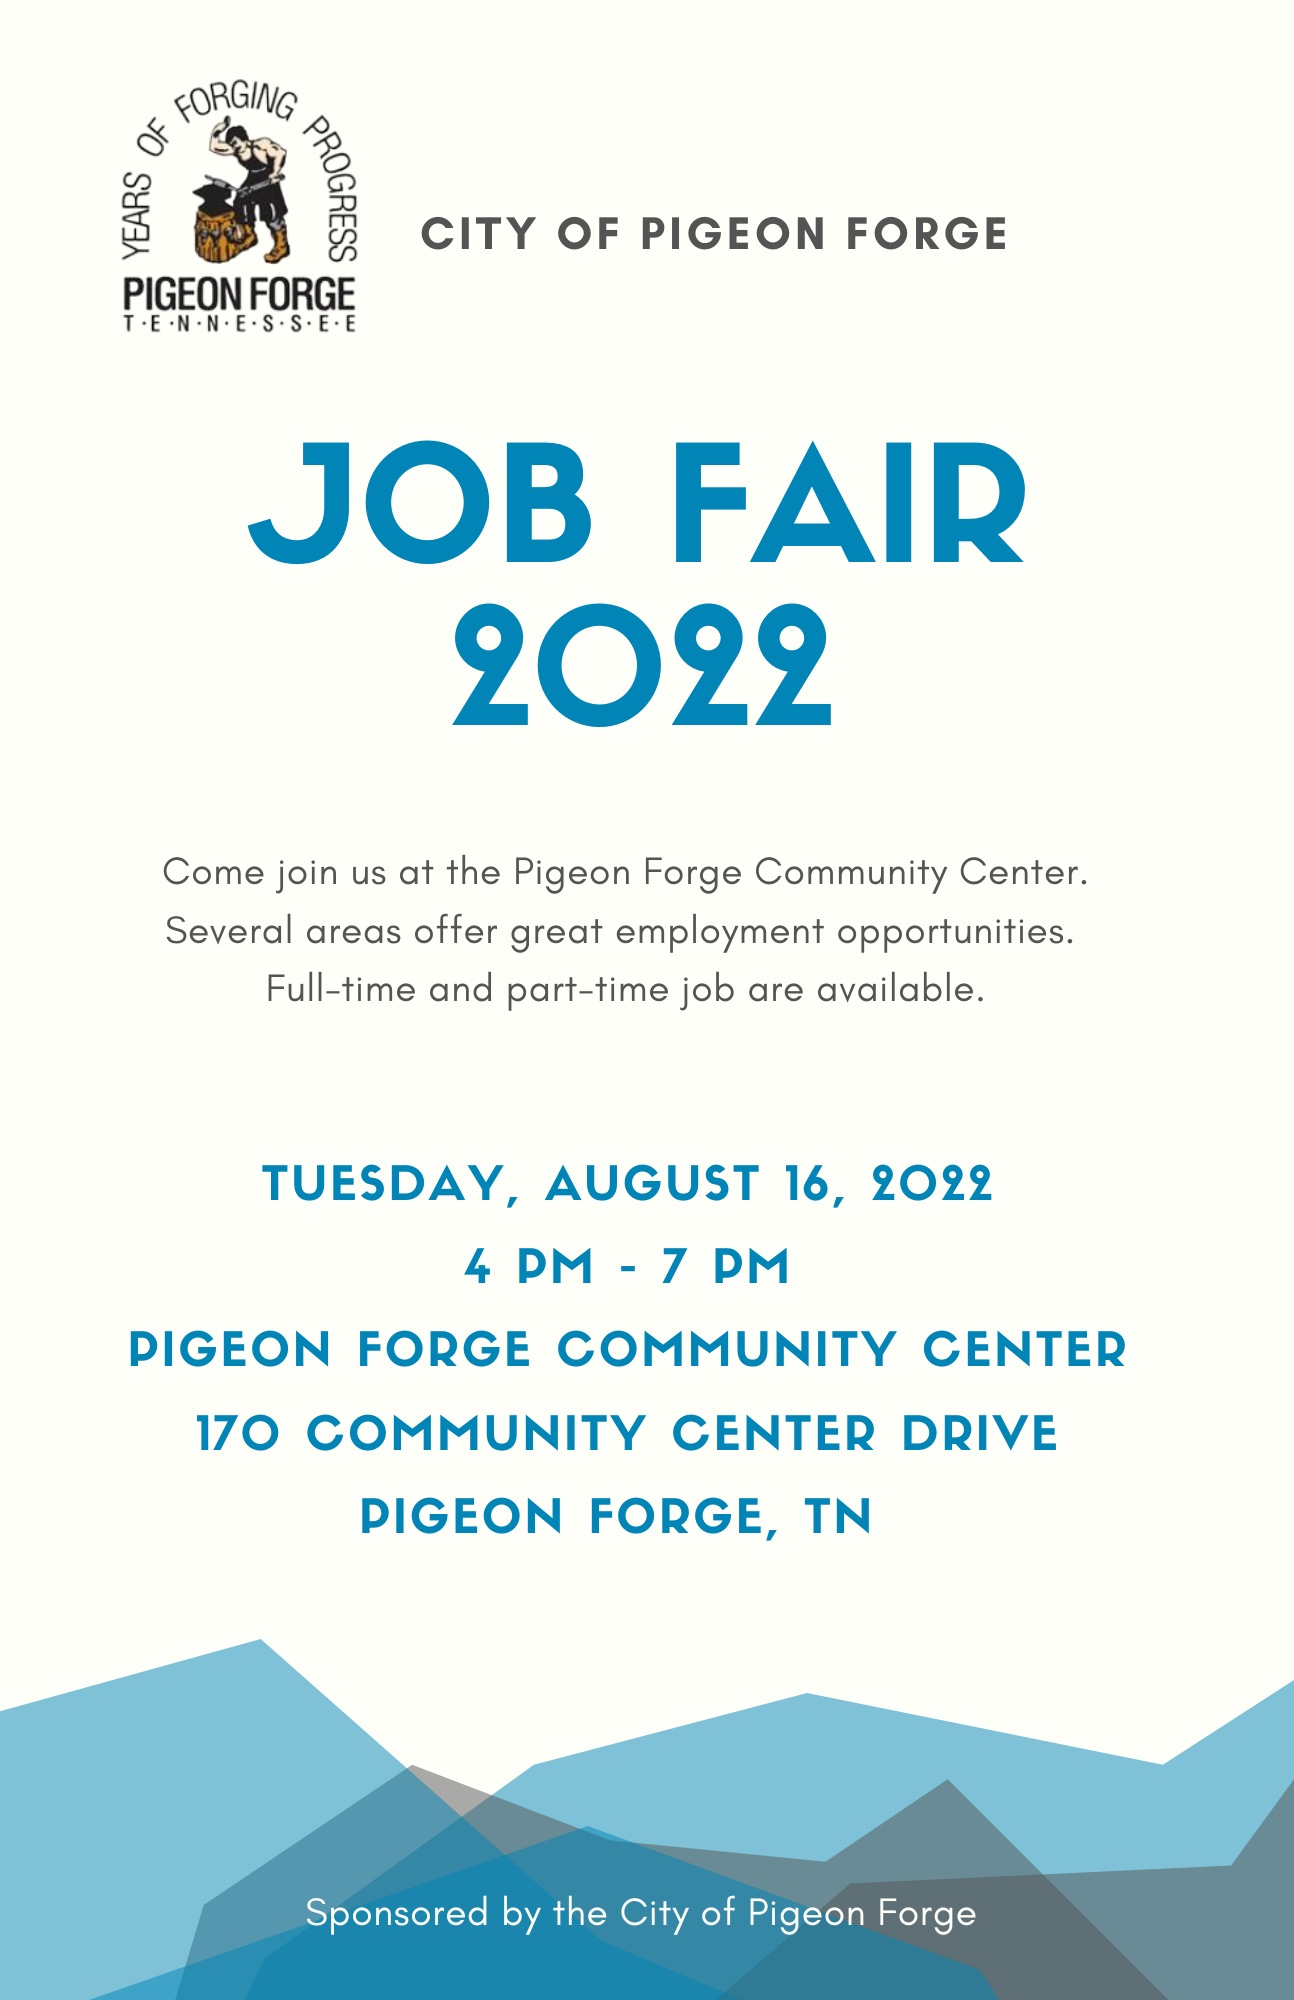 COPF Job Fair Flyer 2022